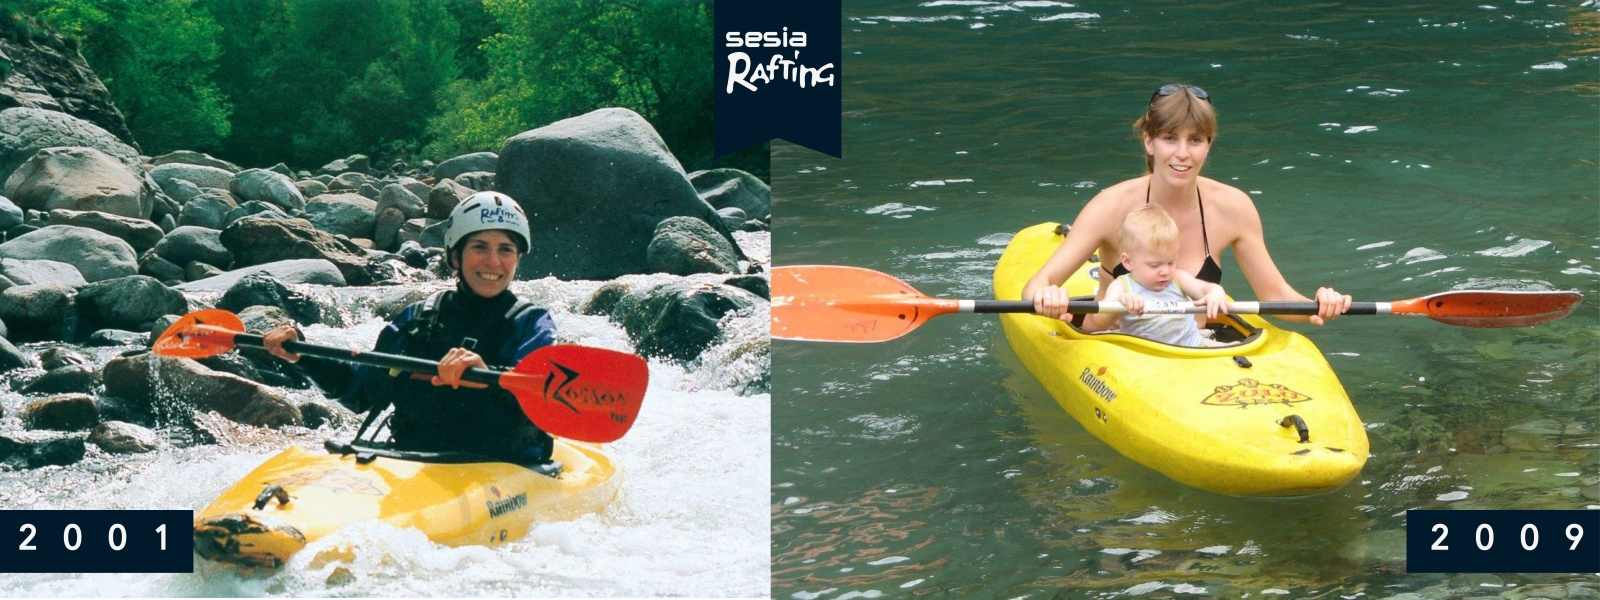 La storia di Sesia Rafting 2001-2009